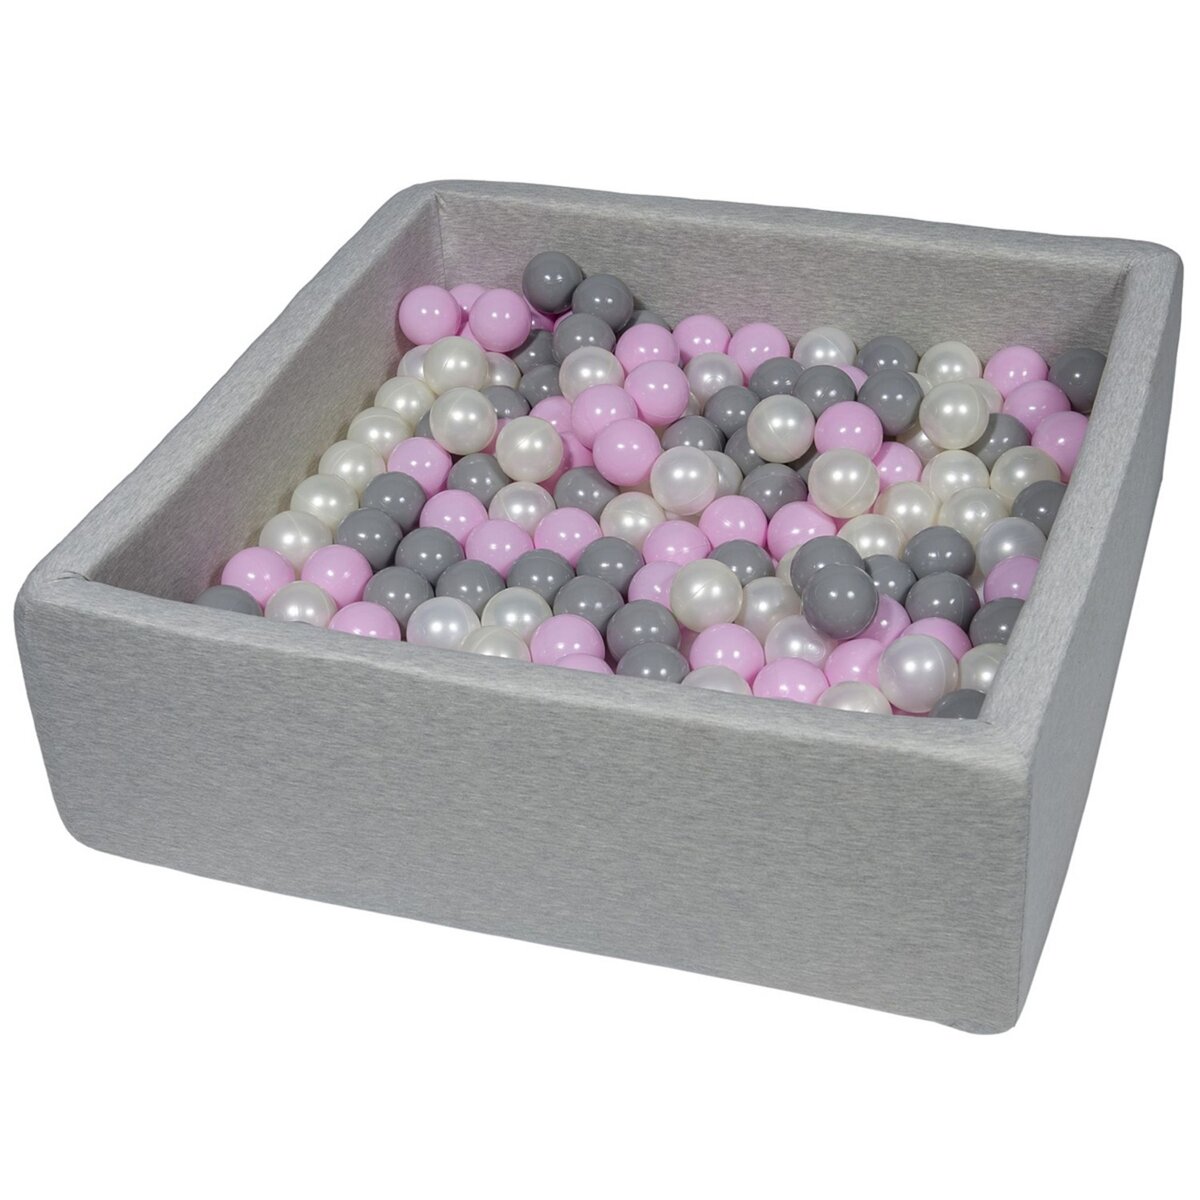  Piscine à balles pour enfant, 90x90 cm, Aire de jeu + 300 balles perle, rose clair, gris